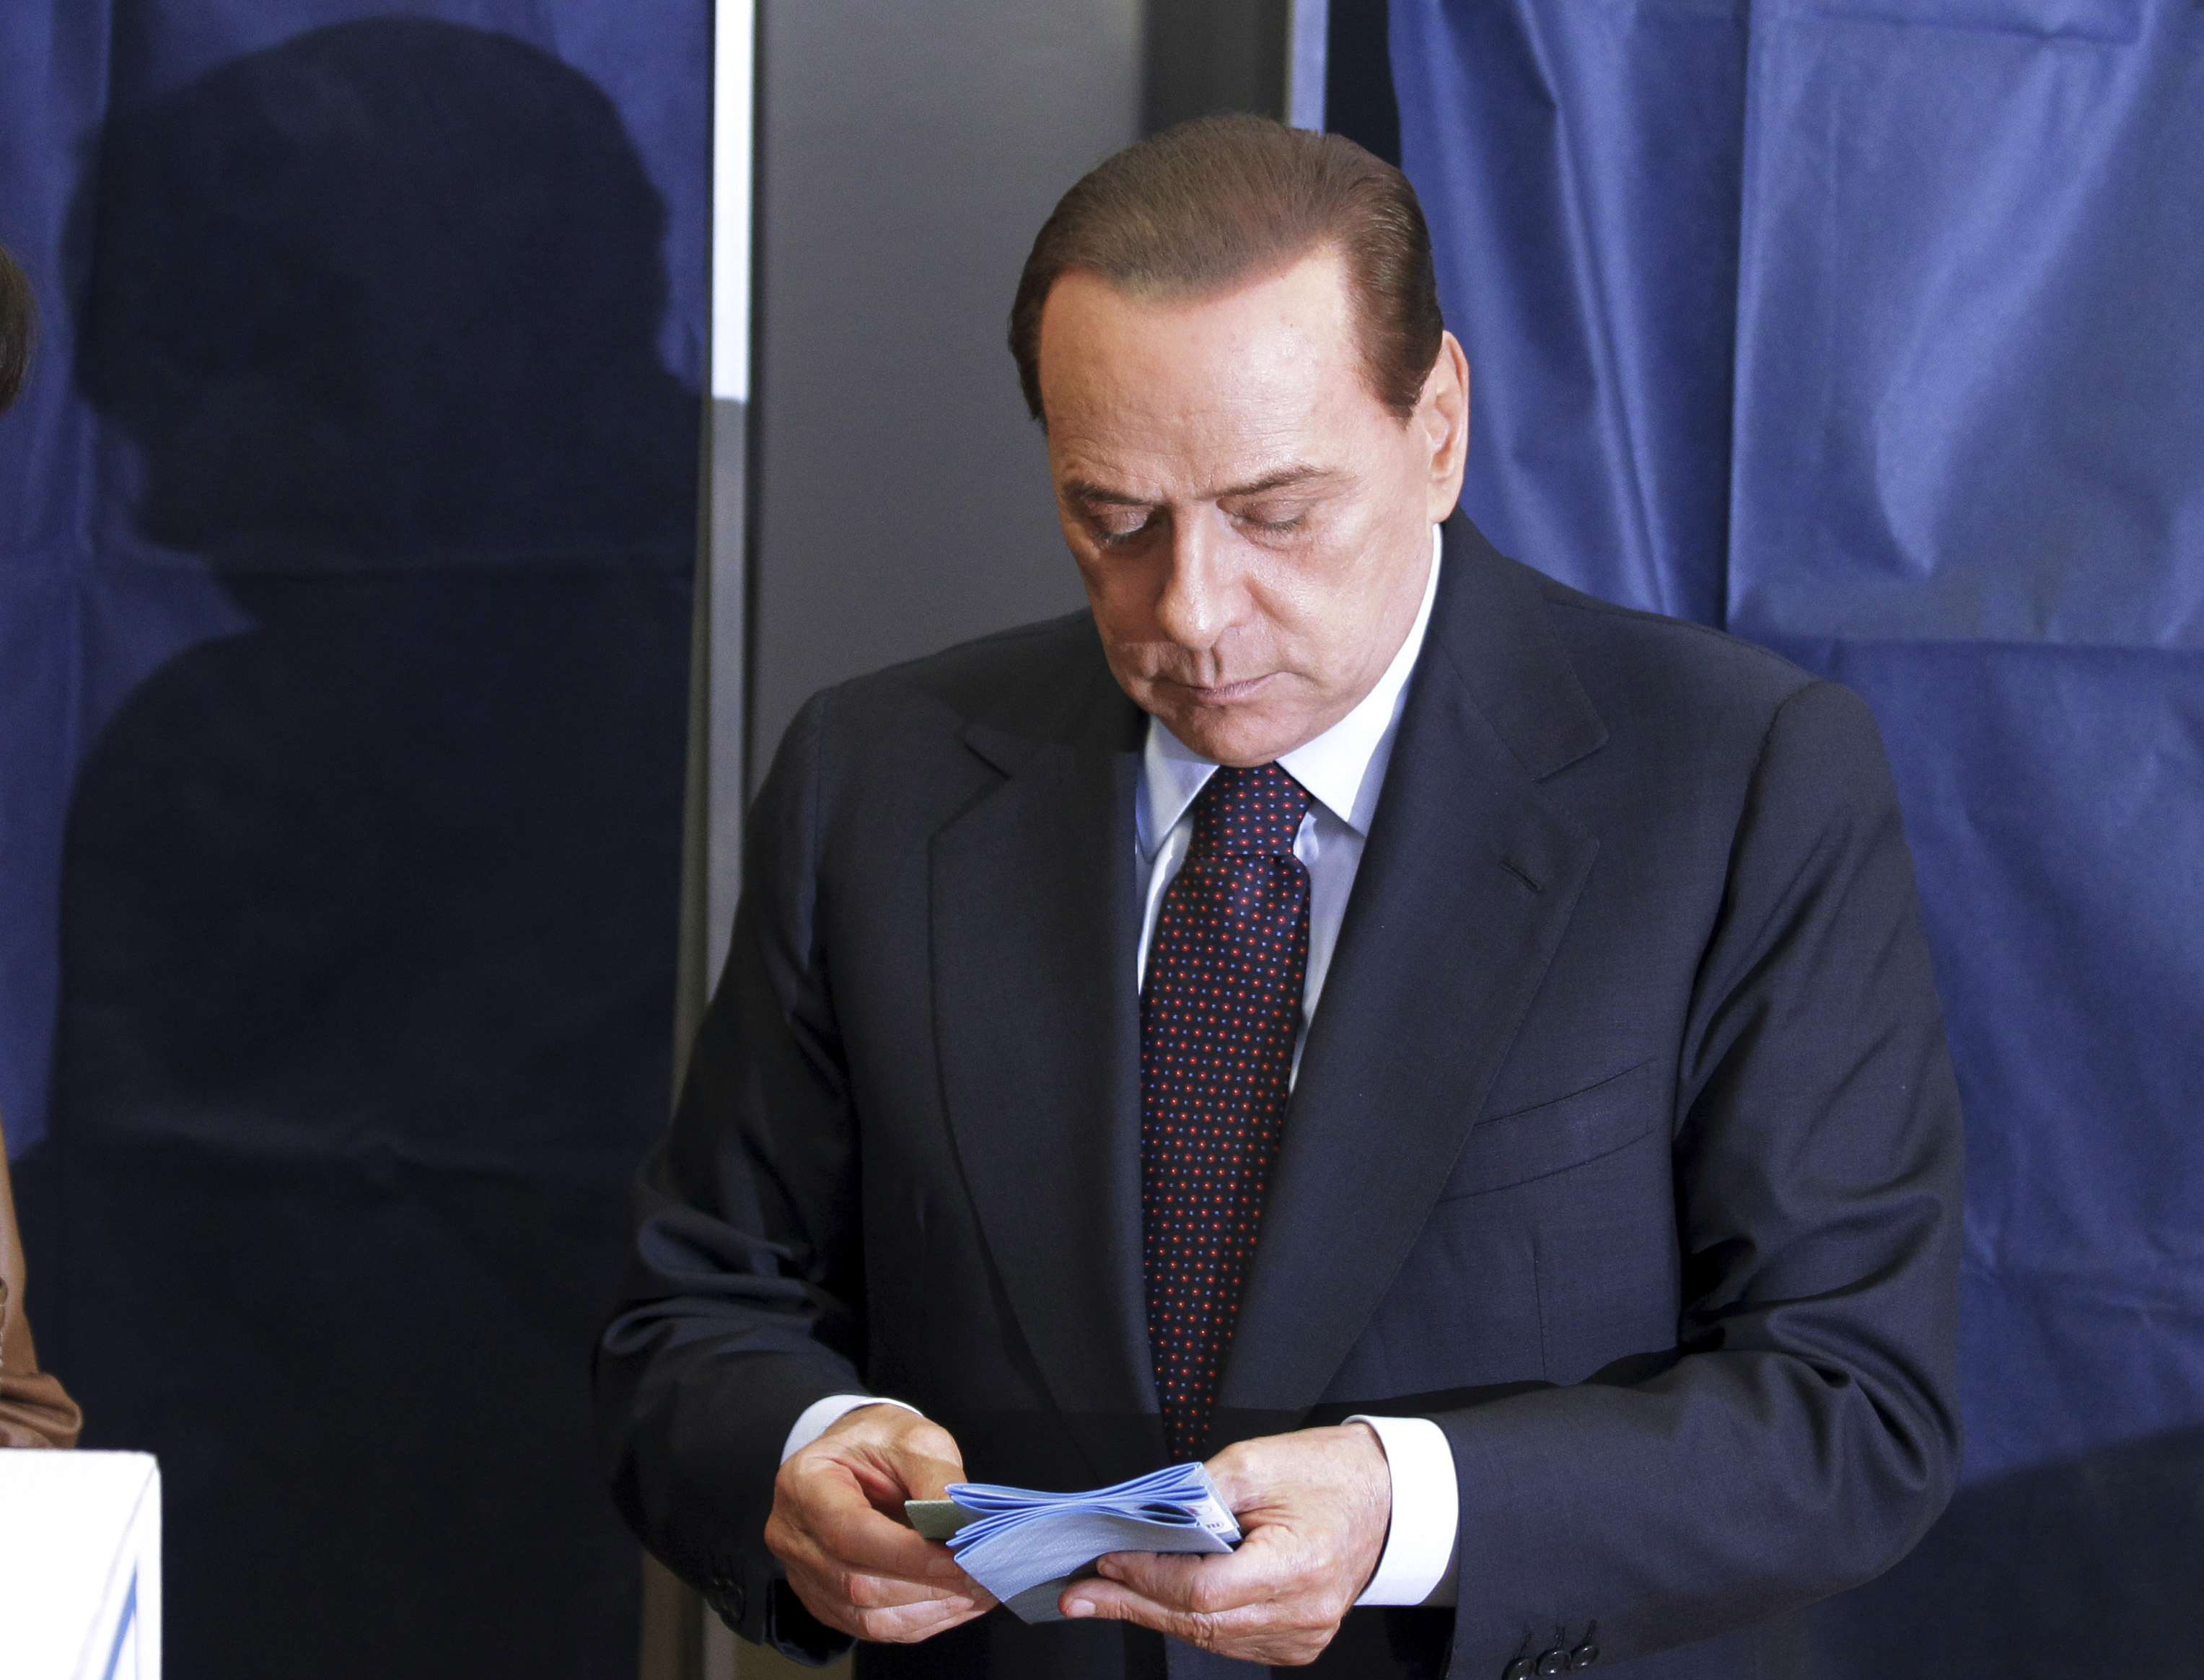 Maffia, Sex- och samlevnad, Brott och straff, Silvio Berlusconi, Italien, Neapel, Milano